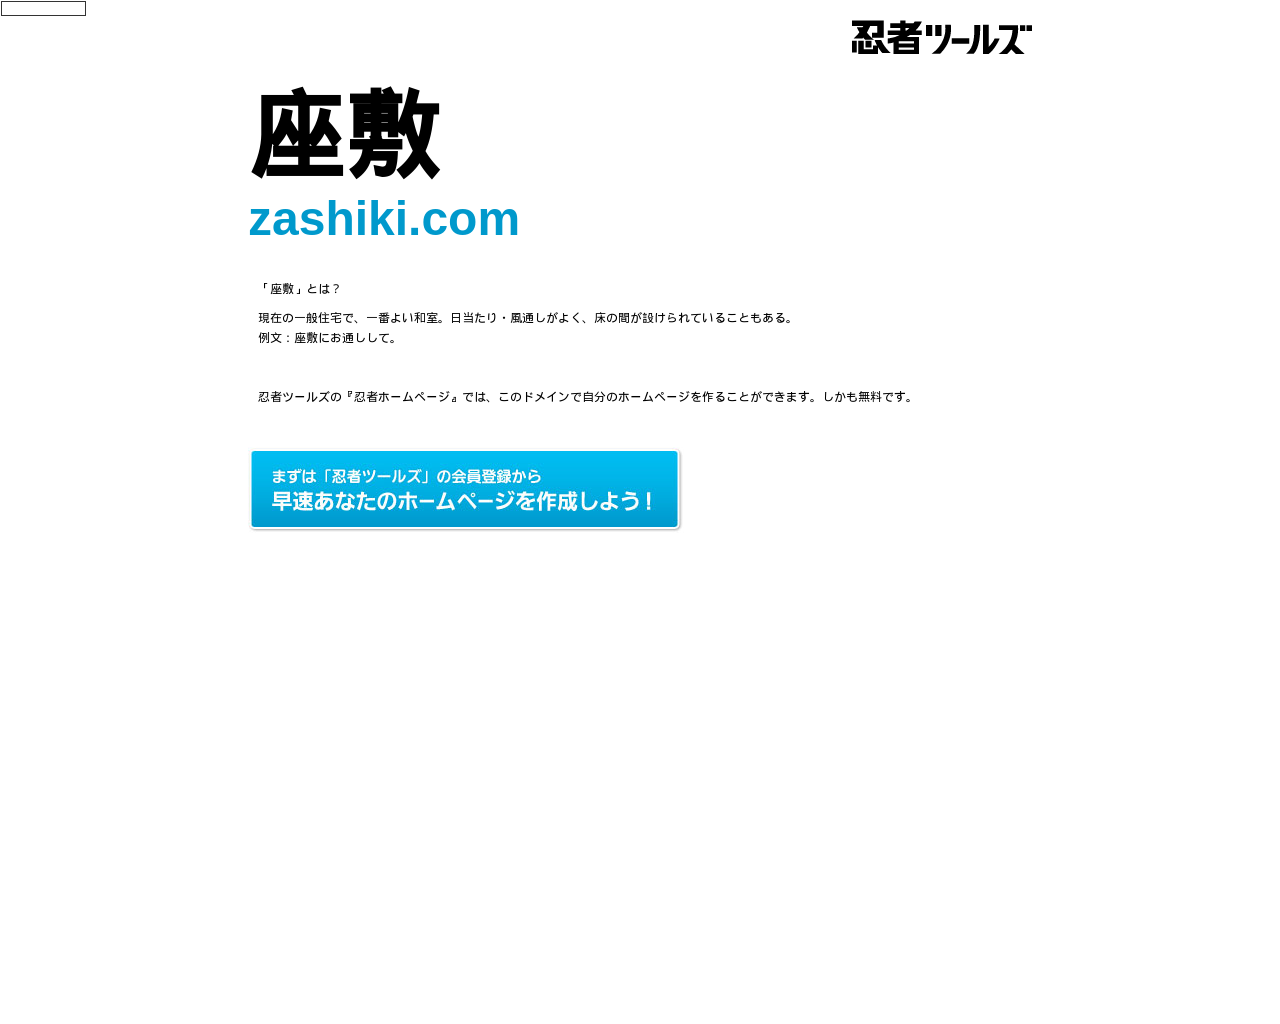 zashiki.com